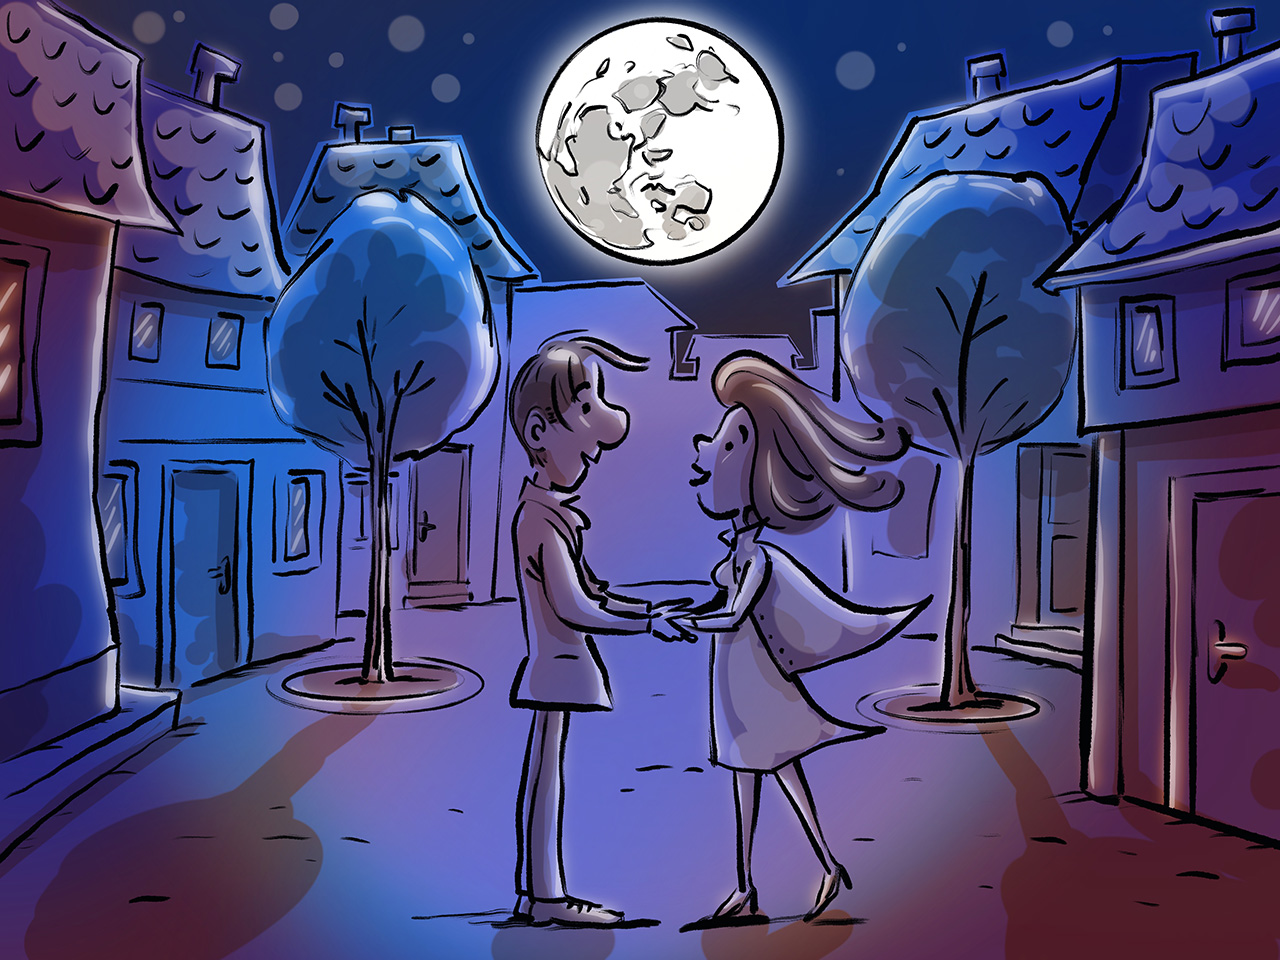 Ana i Bertran stoje na ulici i drže se za ruke, a s noćnog ih neba promatra Mjesec. 